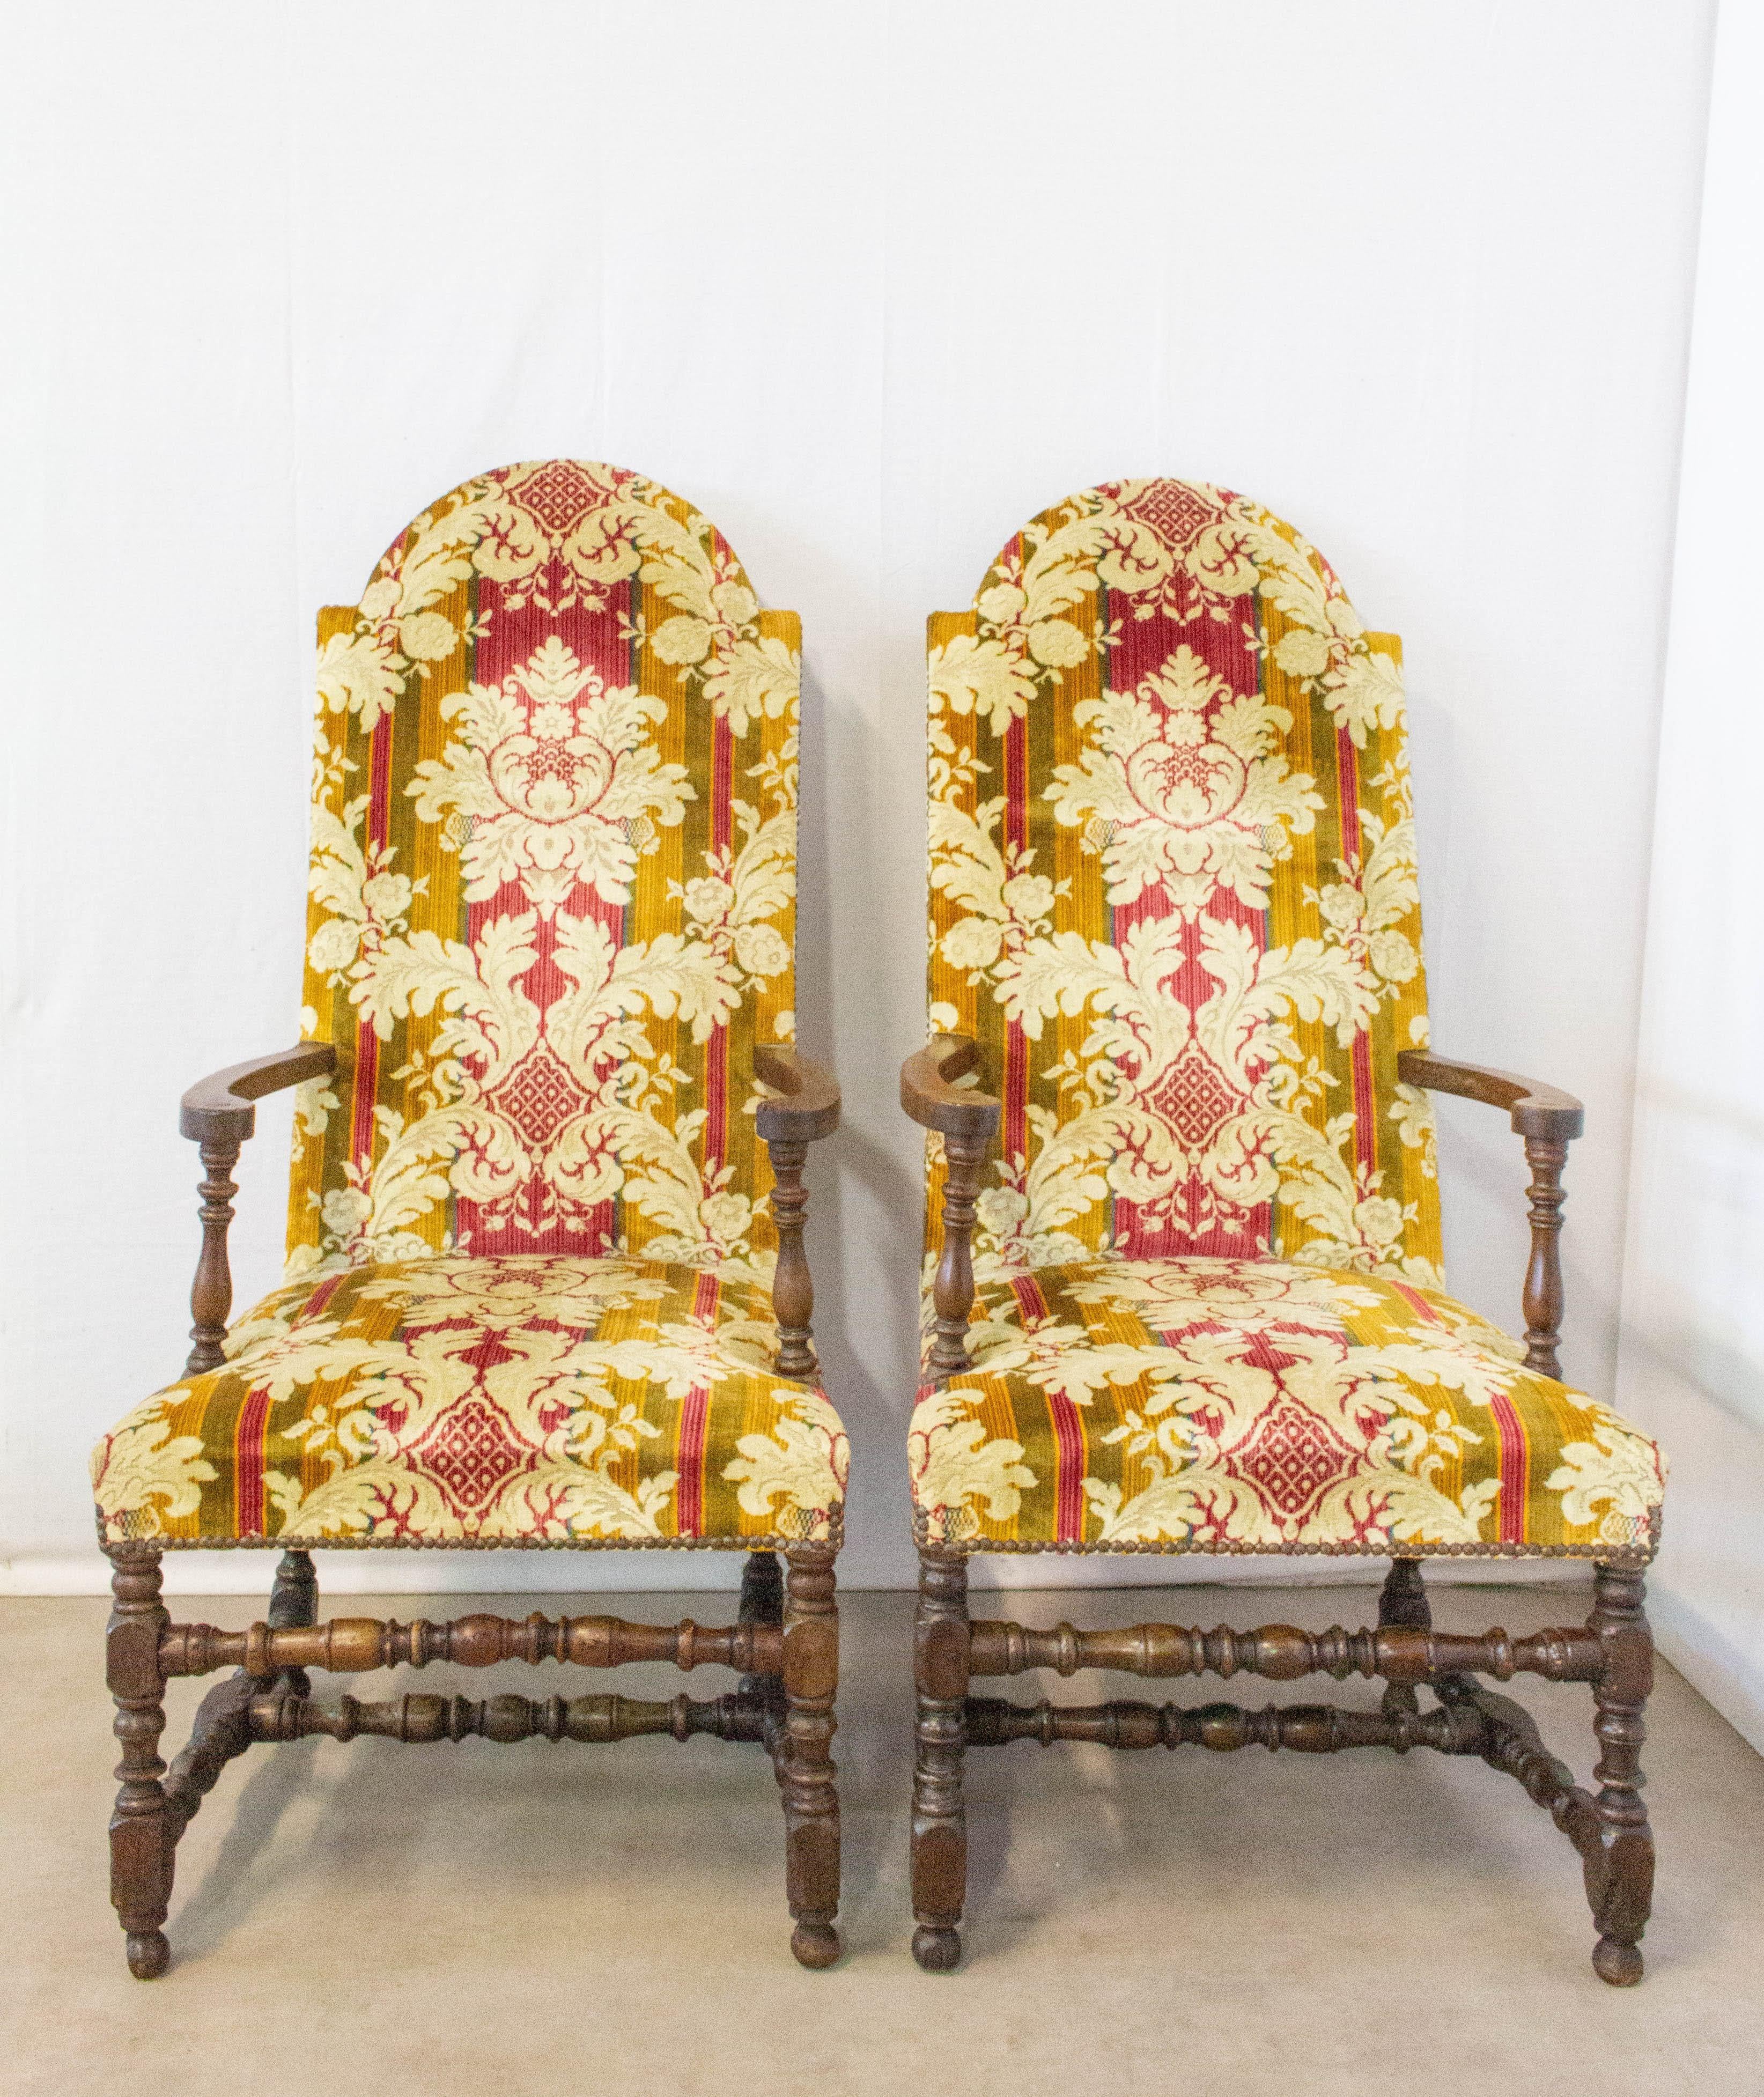 Paire de fauteuils ouverts de la fin du XVIIIe siècle Espagne
Renaissance
Les cadres en bois sont solides et sains, les housses peuvent être facilement changées pour s'adapter à votre intérieur, le rembourrage est bon et peut nécessiter quelques